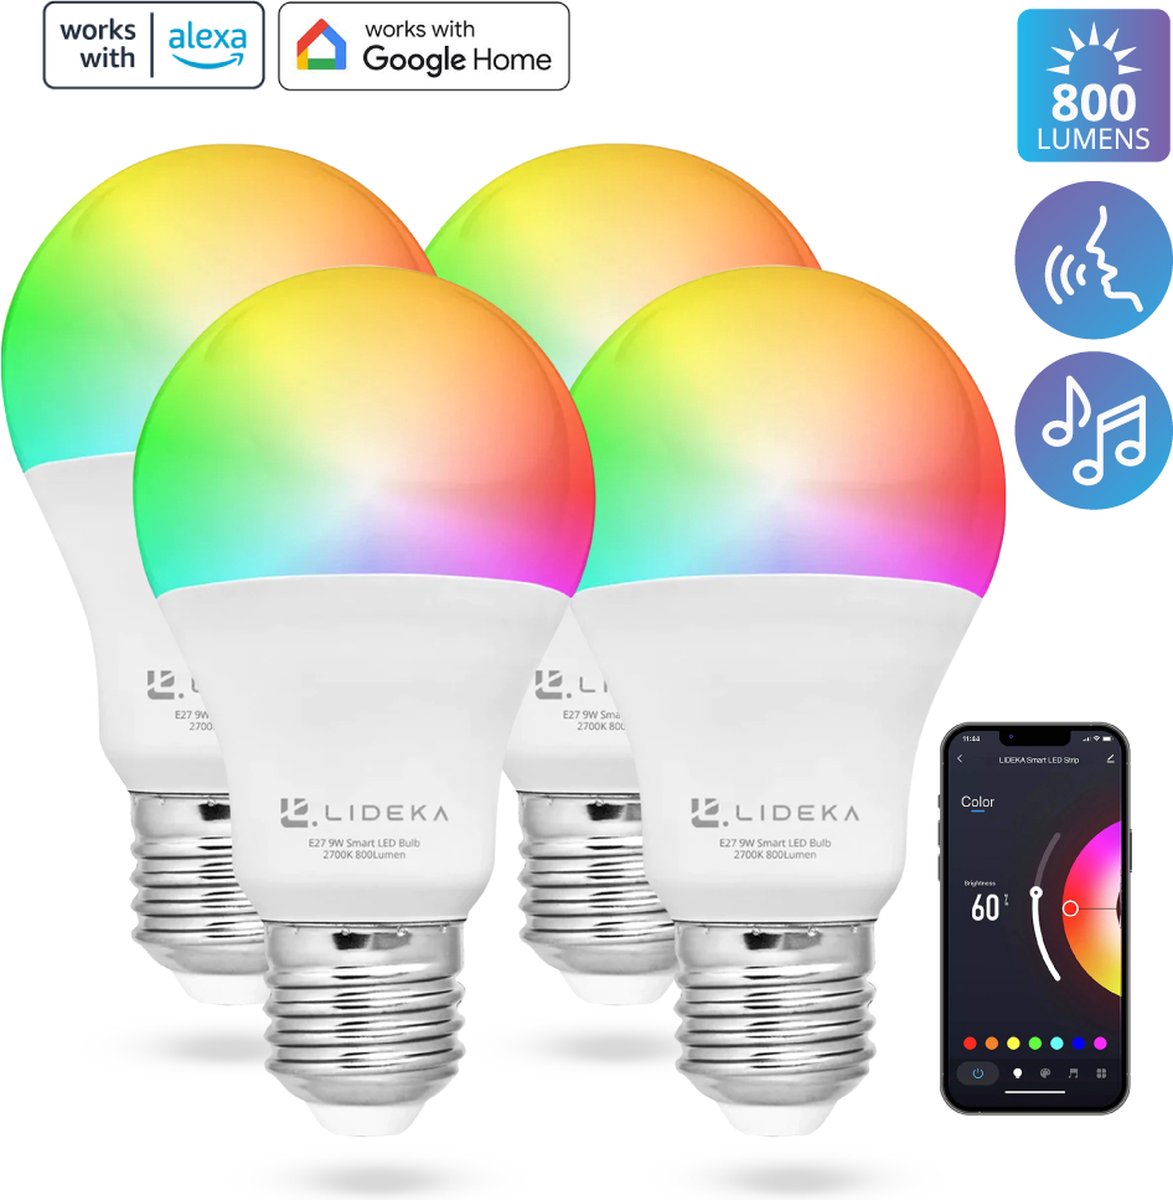 Govee Lot de 2 ampoules intelligentes, WiFi et Bluetooth à changement de  couleur, synchronisation de la musique, 16 millions de couleurs RGBWW